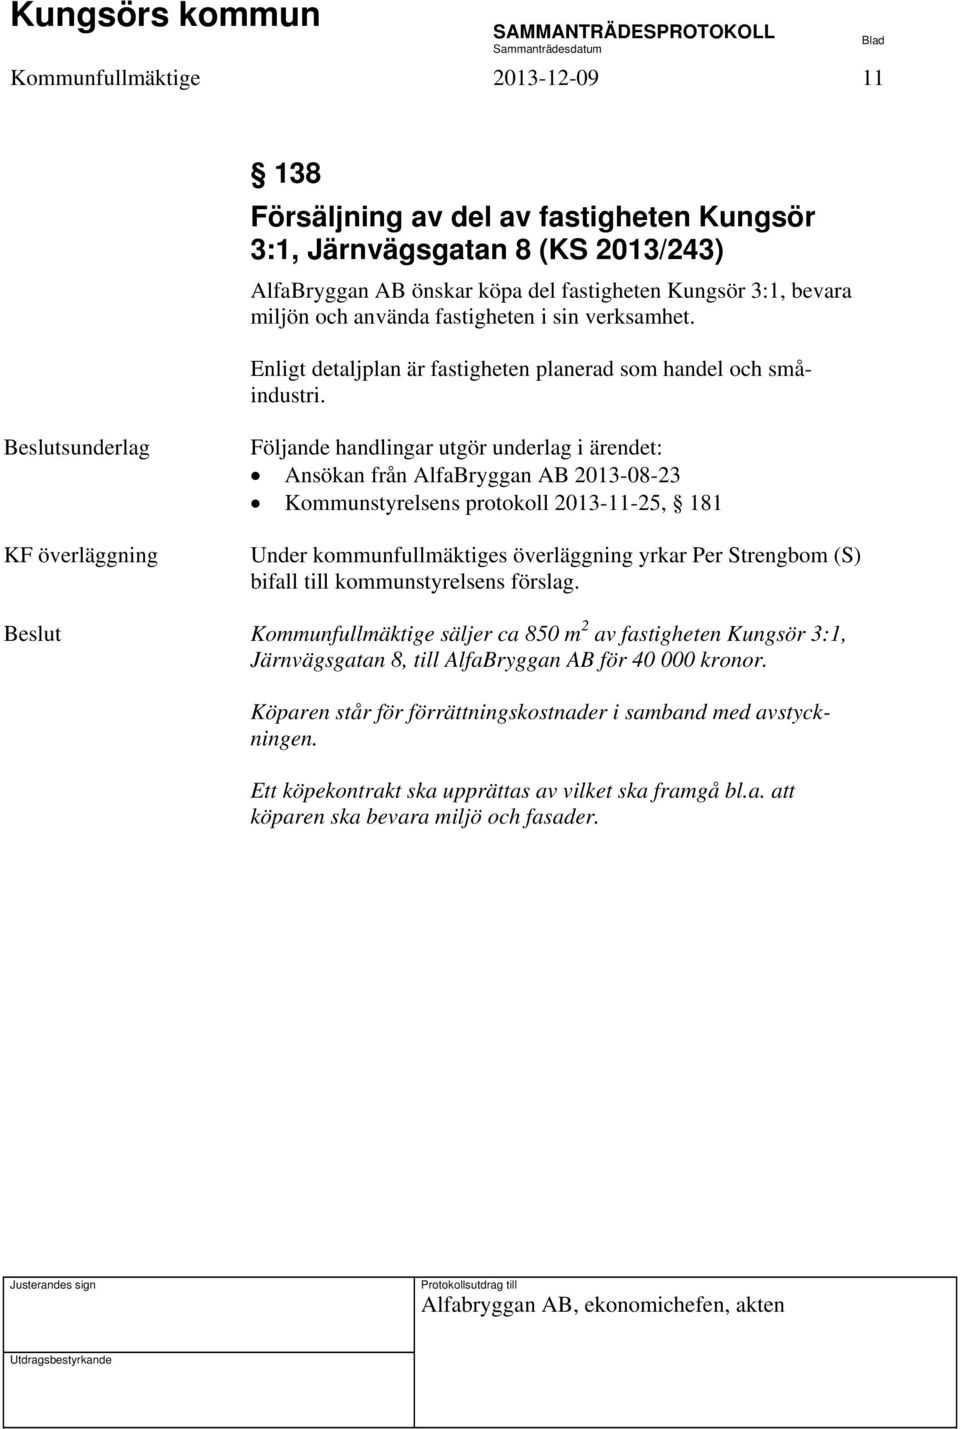 KF överläggning Ansökan från AlfaBryggan AB 2013-08-23 Kommunstyrelsens protokoll 2013-11-25, 181 Under kommunfullmäktiges överläggning yrkar Per Strengbom (S) bifall till kommunstyrelsens förslag.